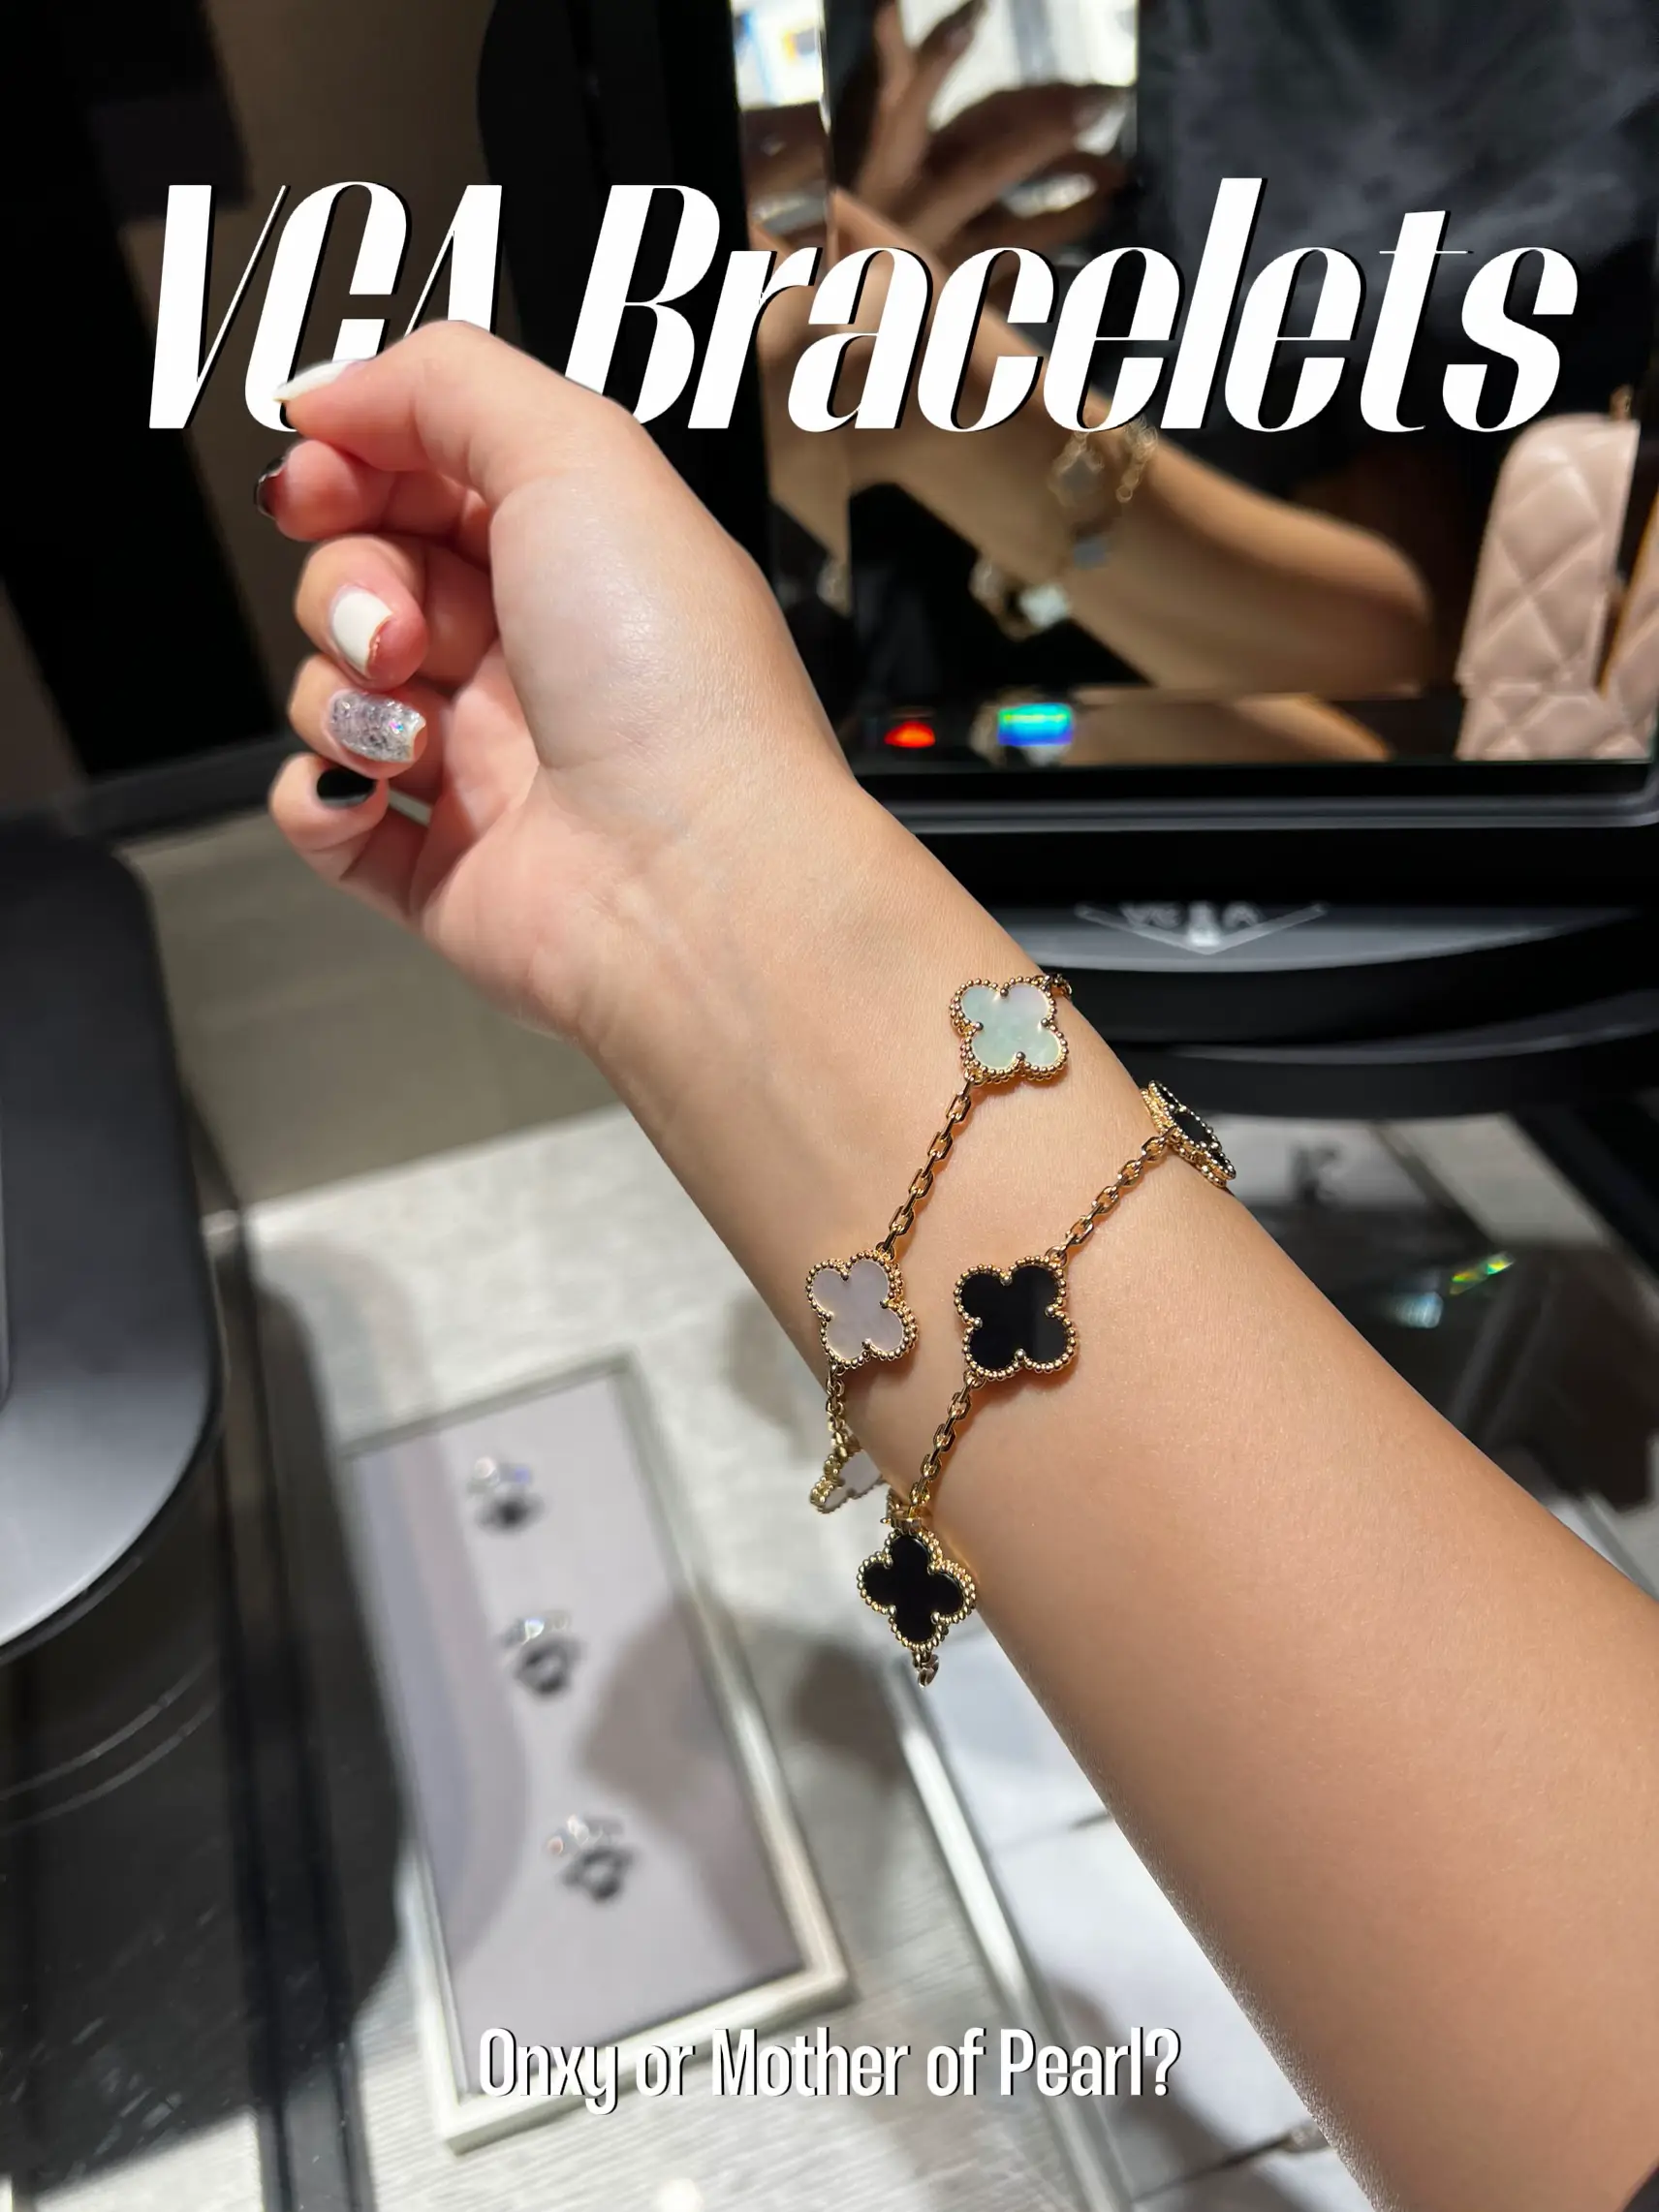 The Van Cleef Bracelet, Gallery posted by Wrist